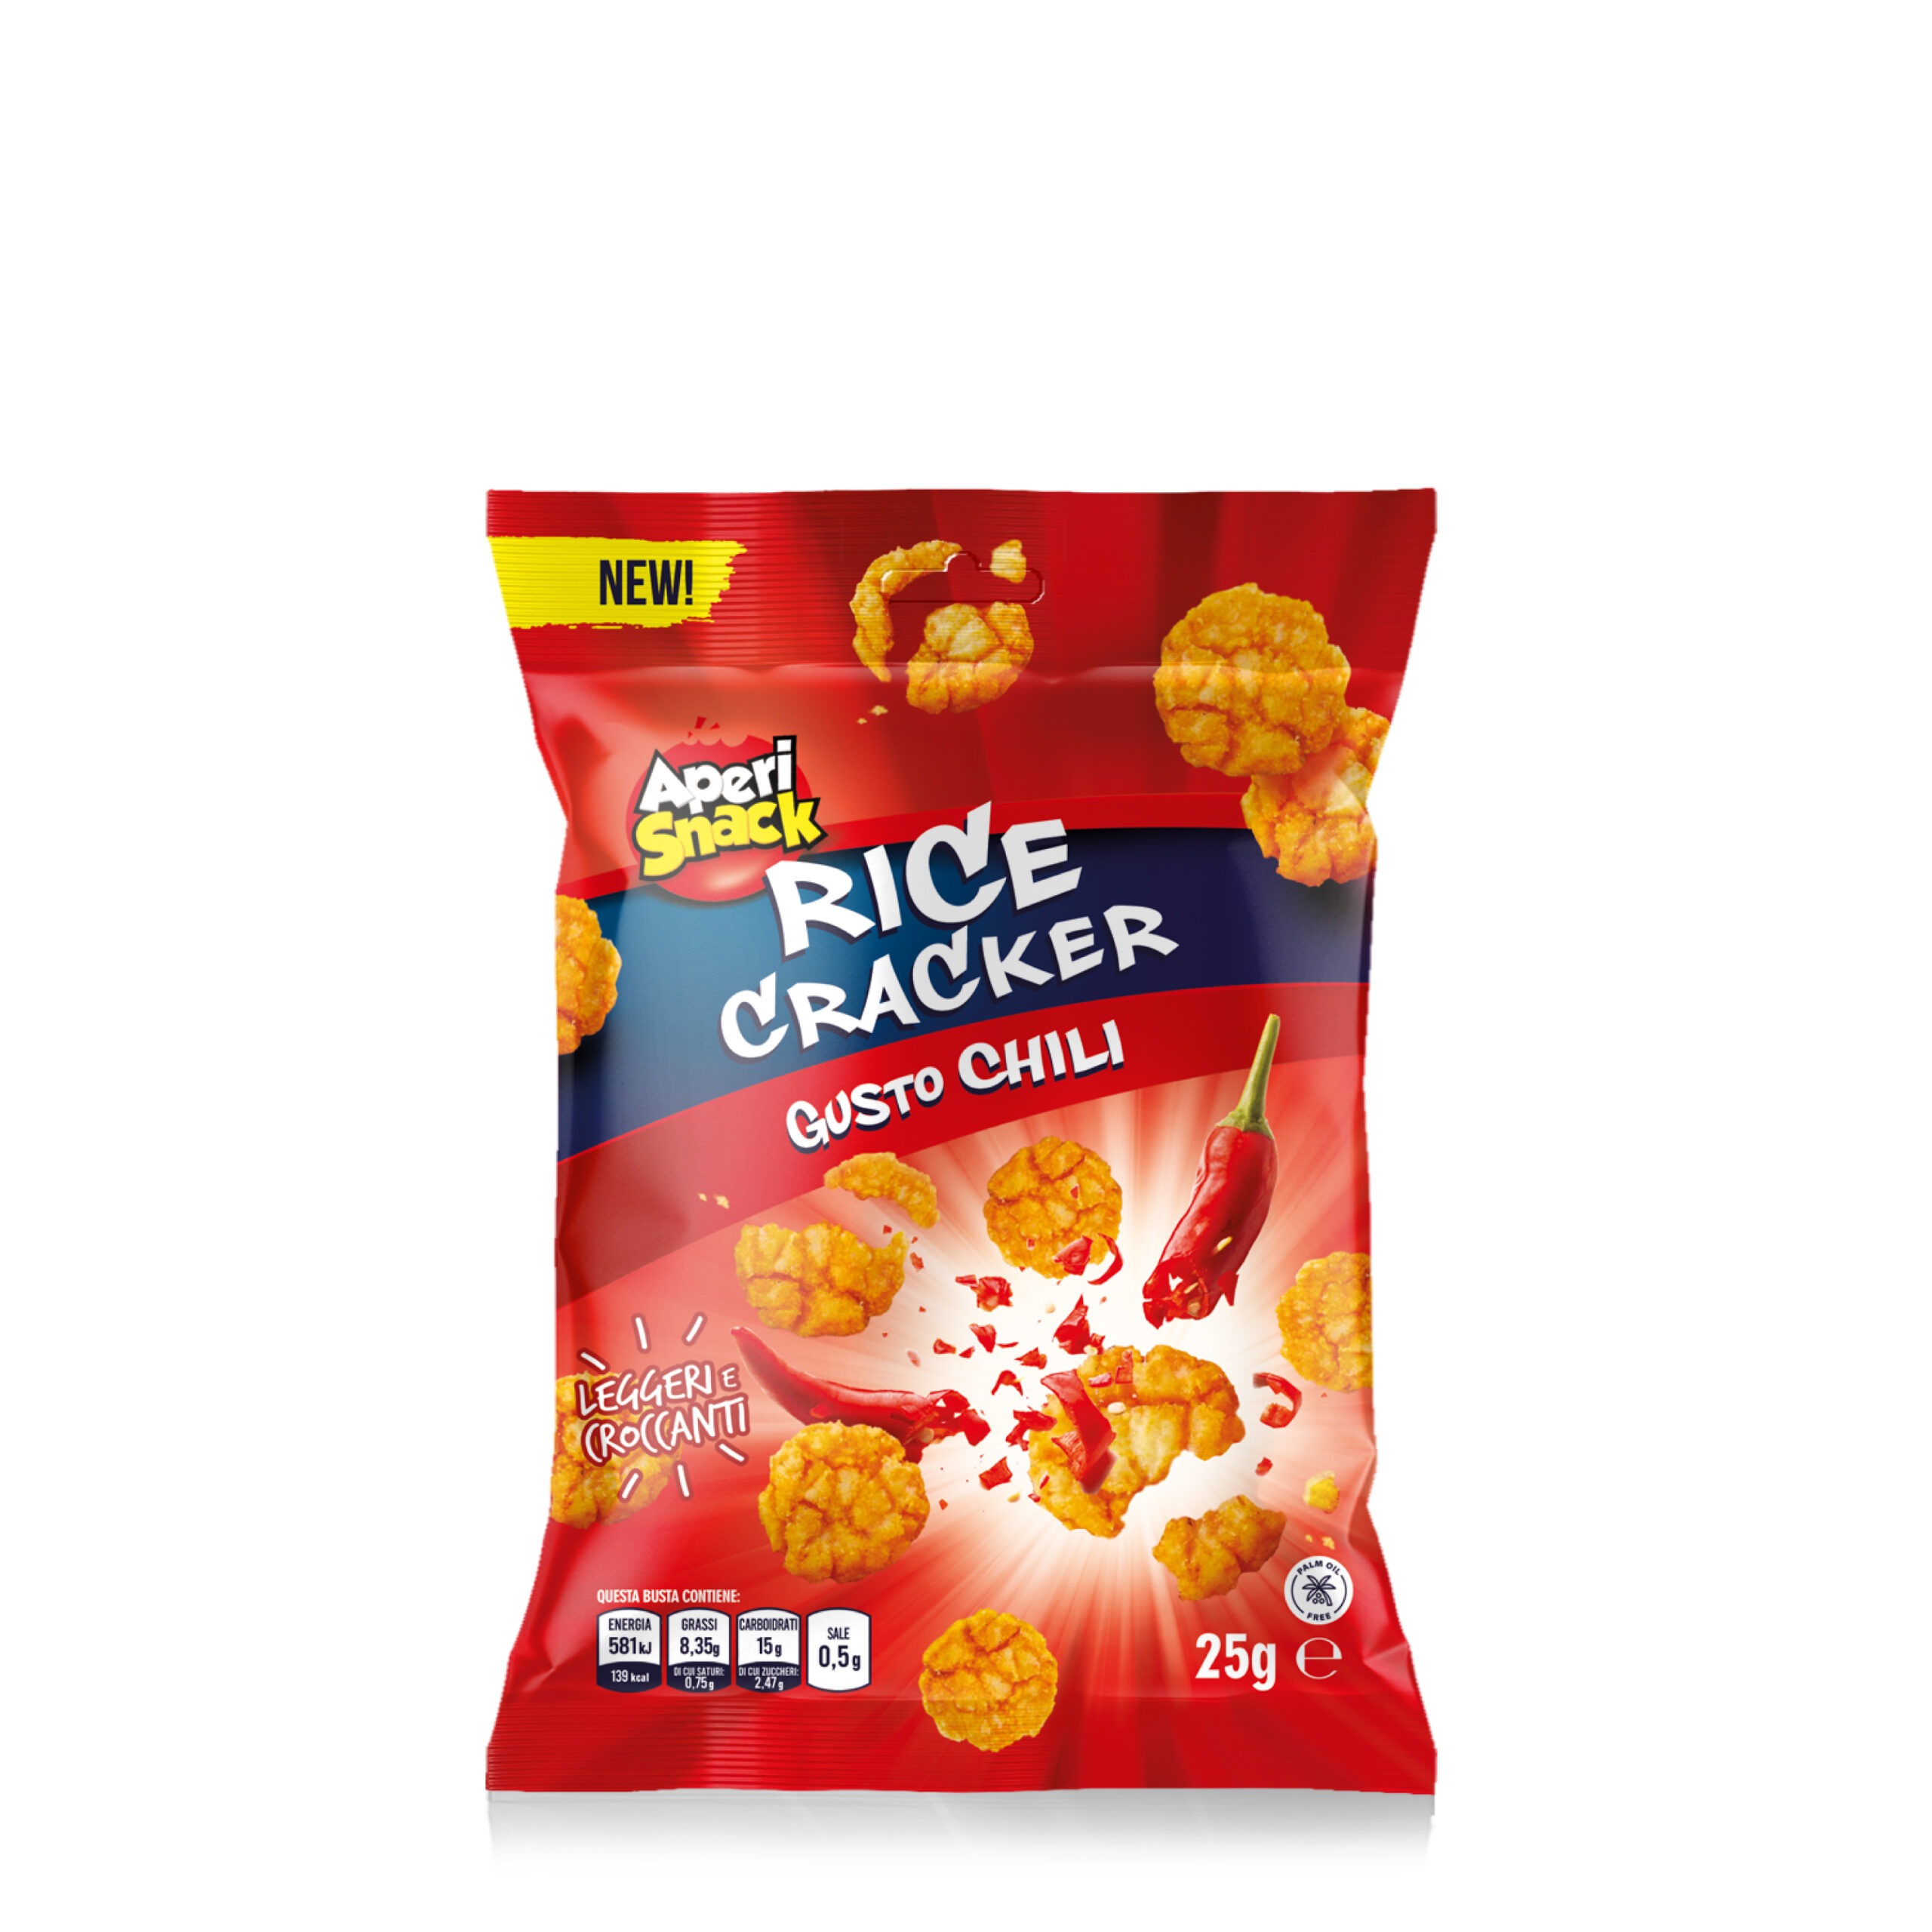 Vendita Rice Cracker Monoporzione da 25g - AperiSnack